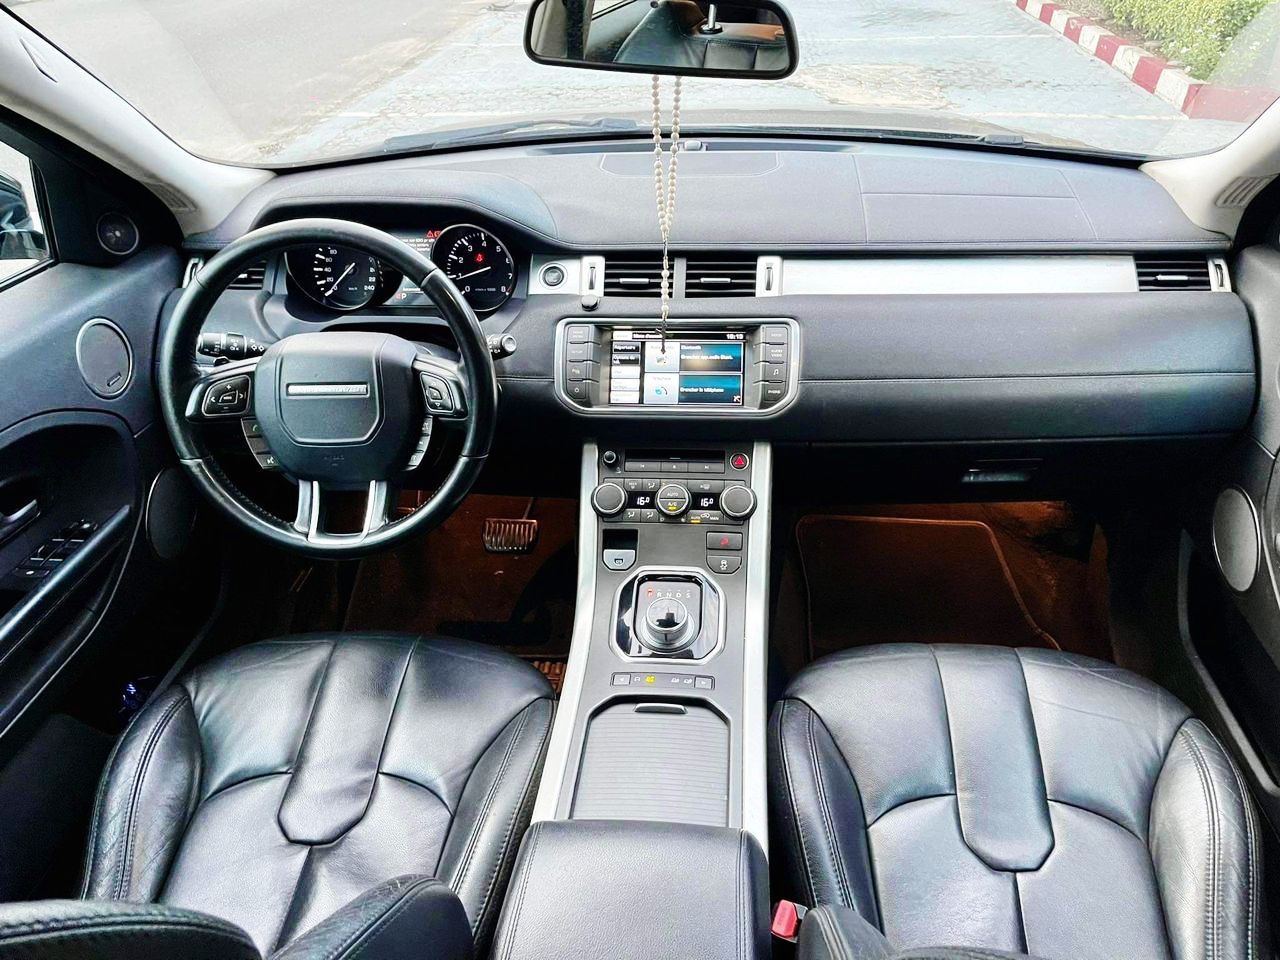 Range Rover EvoQ  Année 2017 Essence Automatique 4cylindres 11CV Climatisé